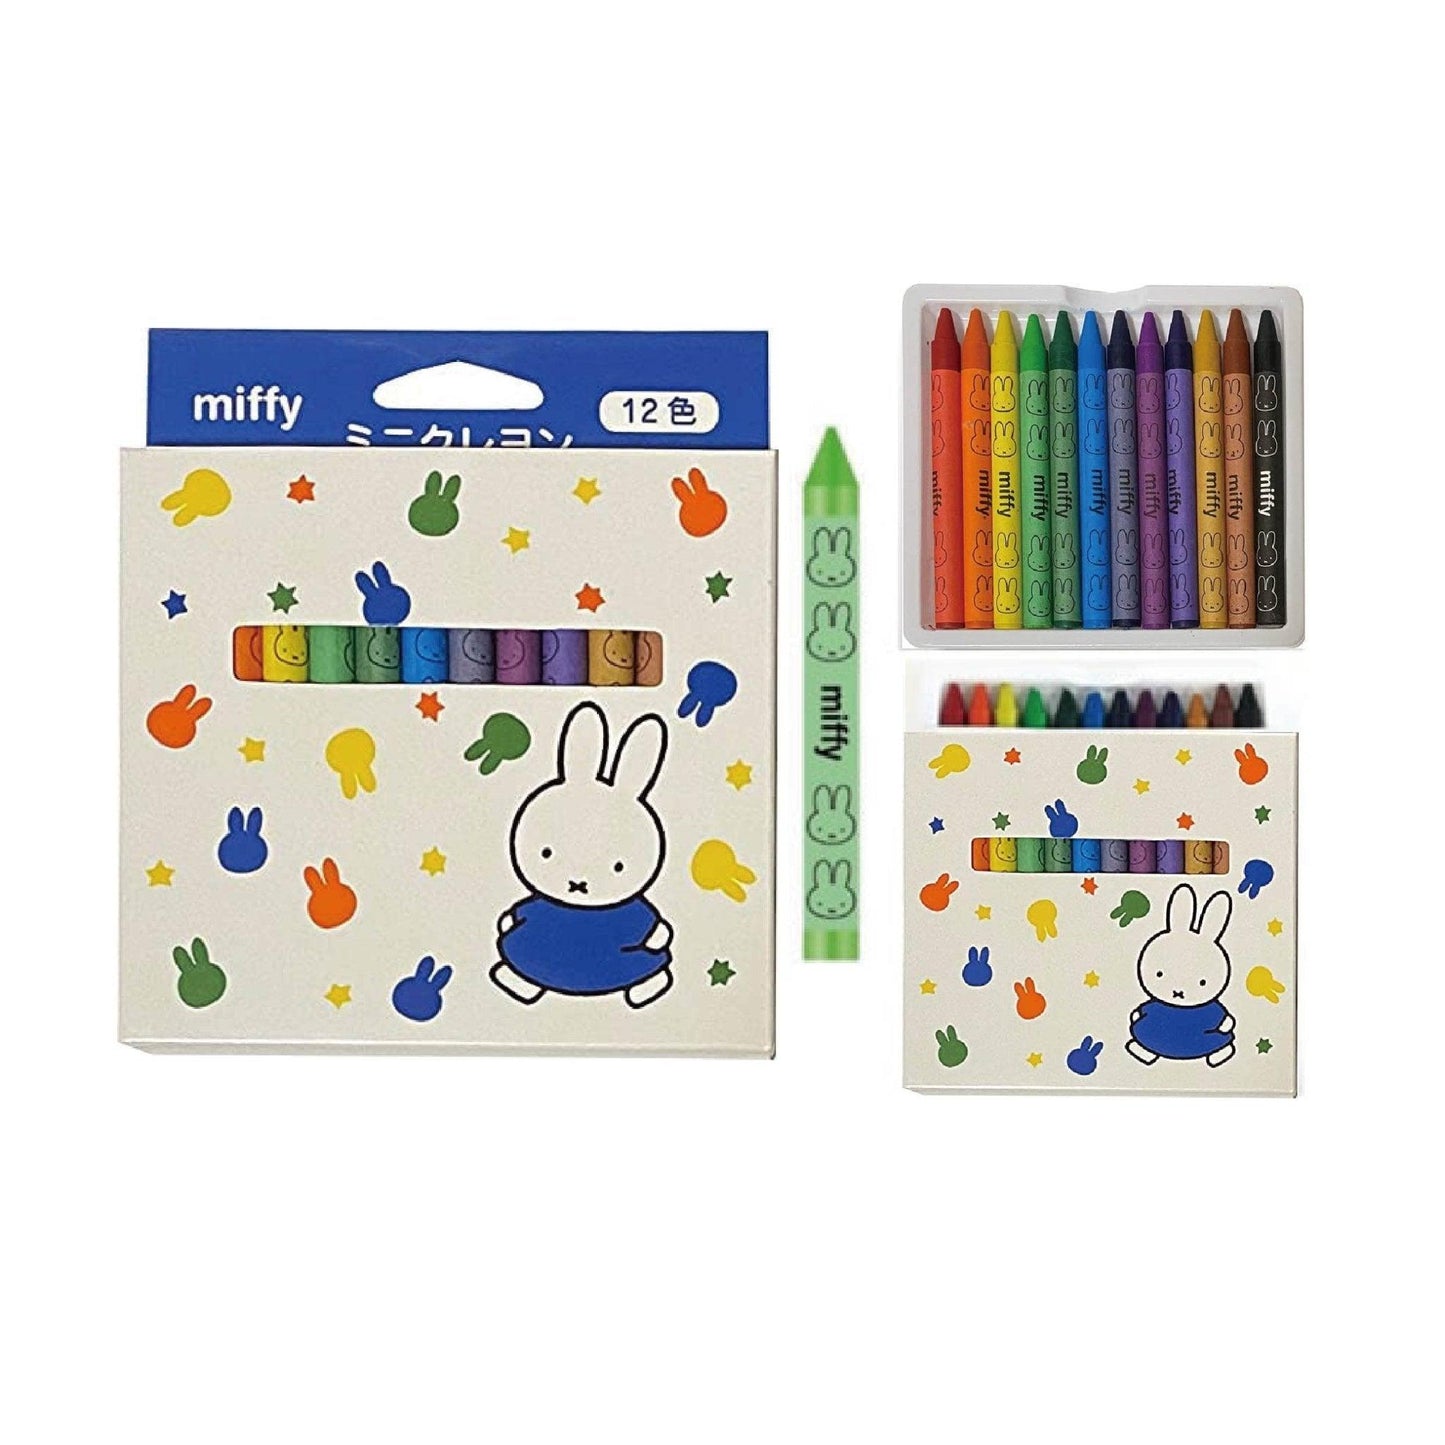 Kutsuwa MF657 Miffy Shape 12 Colors Crayon Set Mini Crayon Set Carton Packaging - CHL-STORE 